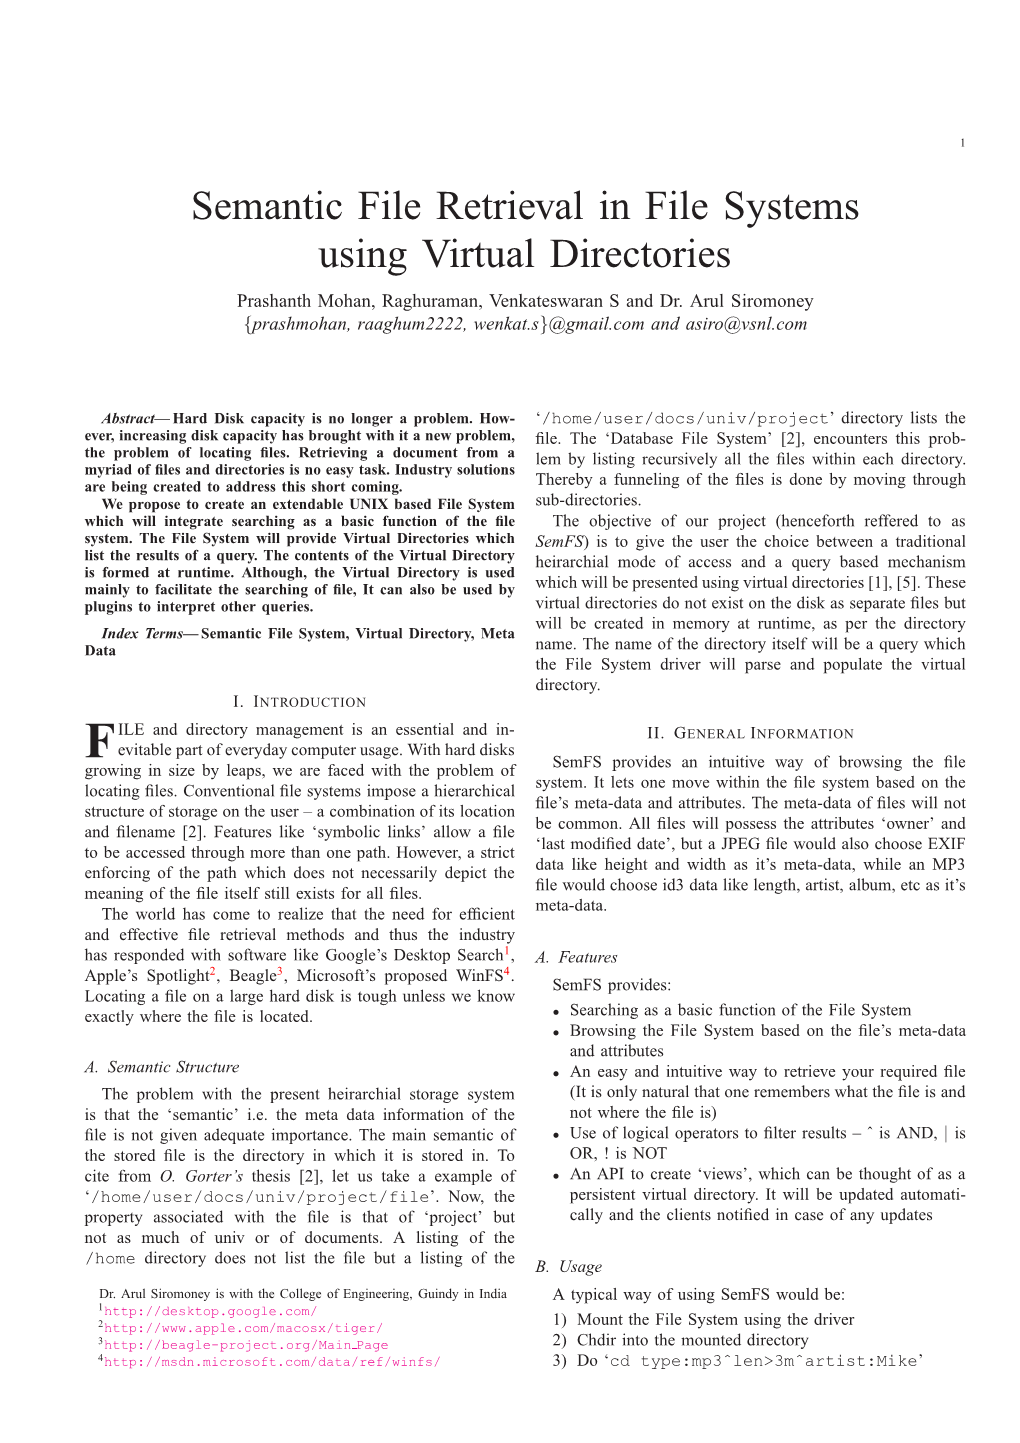 Using Virtual Directories Prashanth Mohan, Raghuraman, Venkateswaran S and Dr